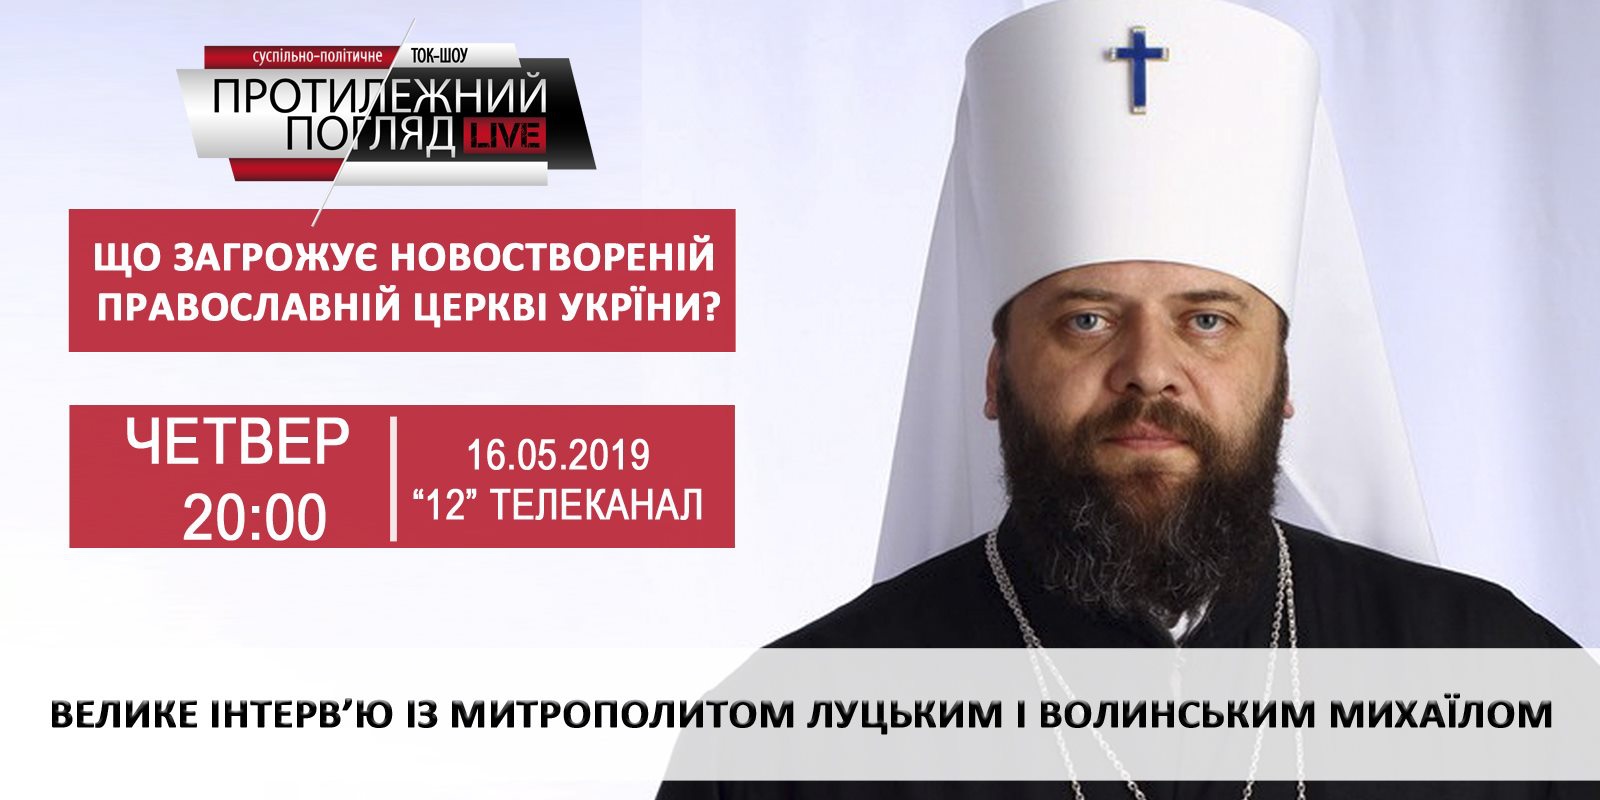 Що загрожує новоствореній Православній церкві України?